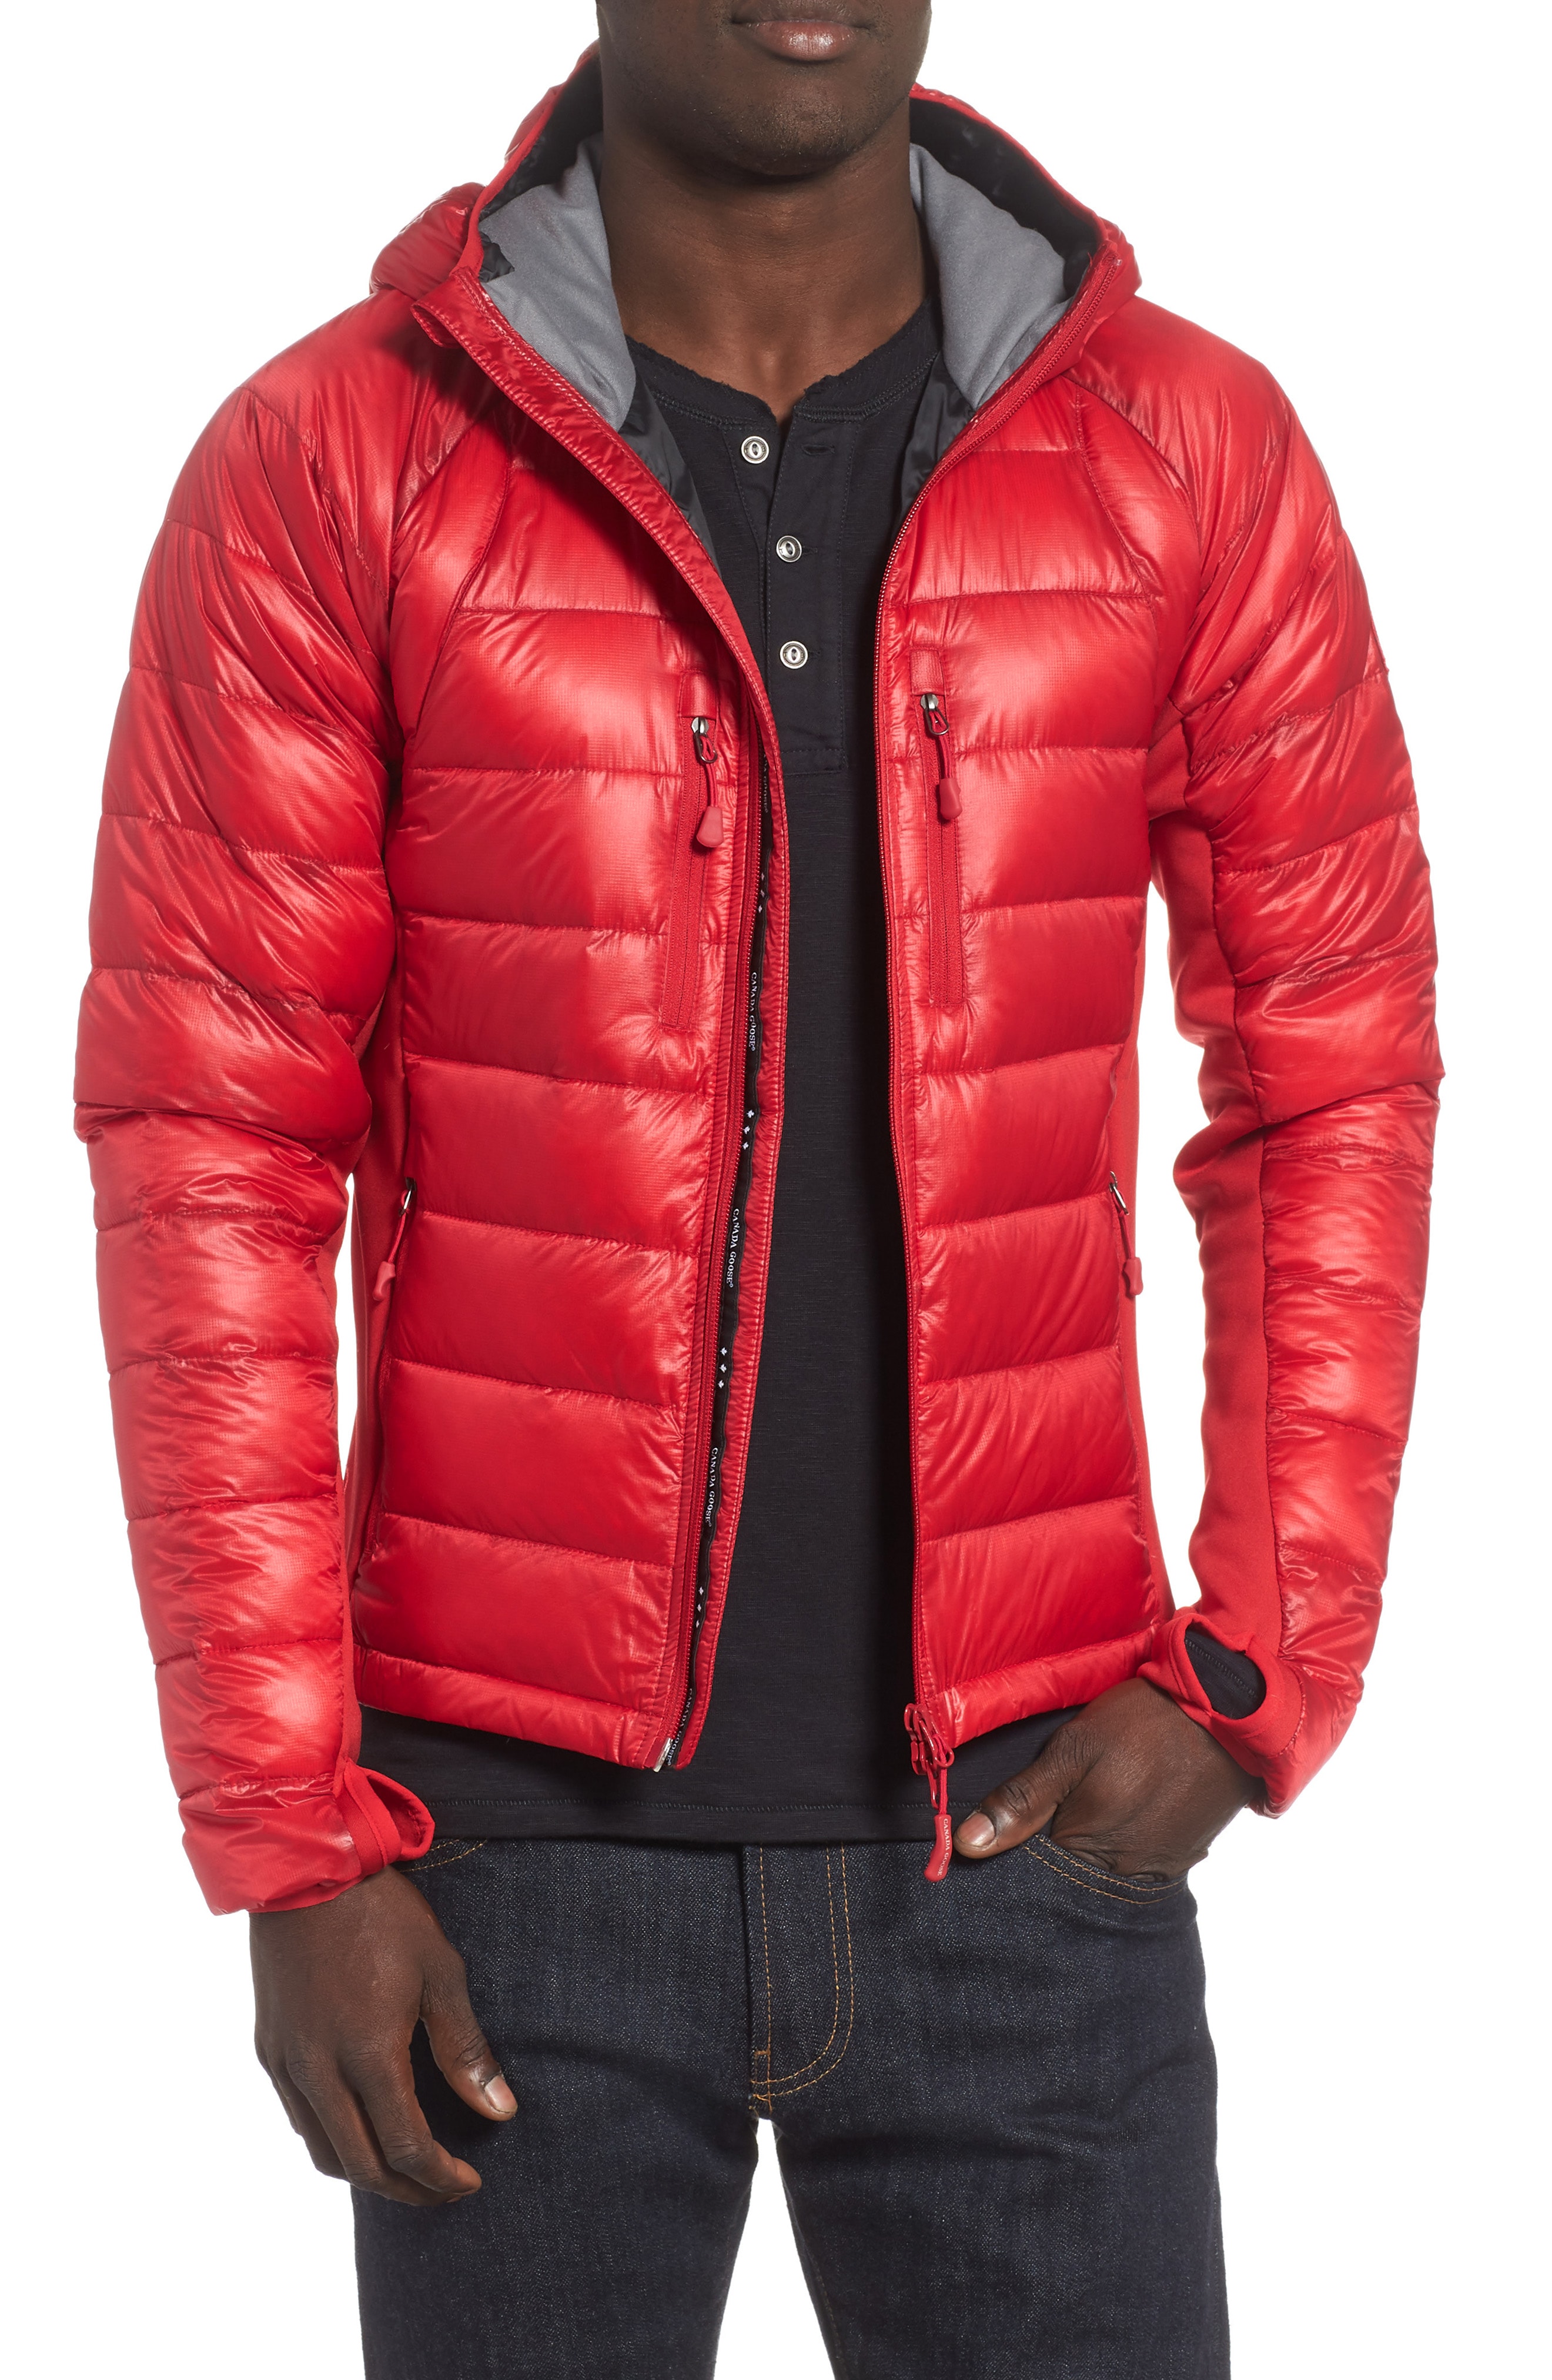 Men's Red Coats & Jackets | Nordstrom